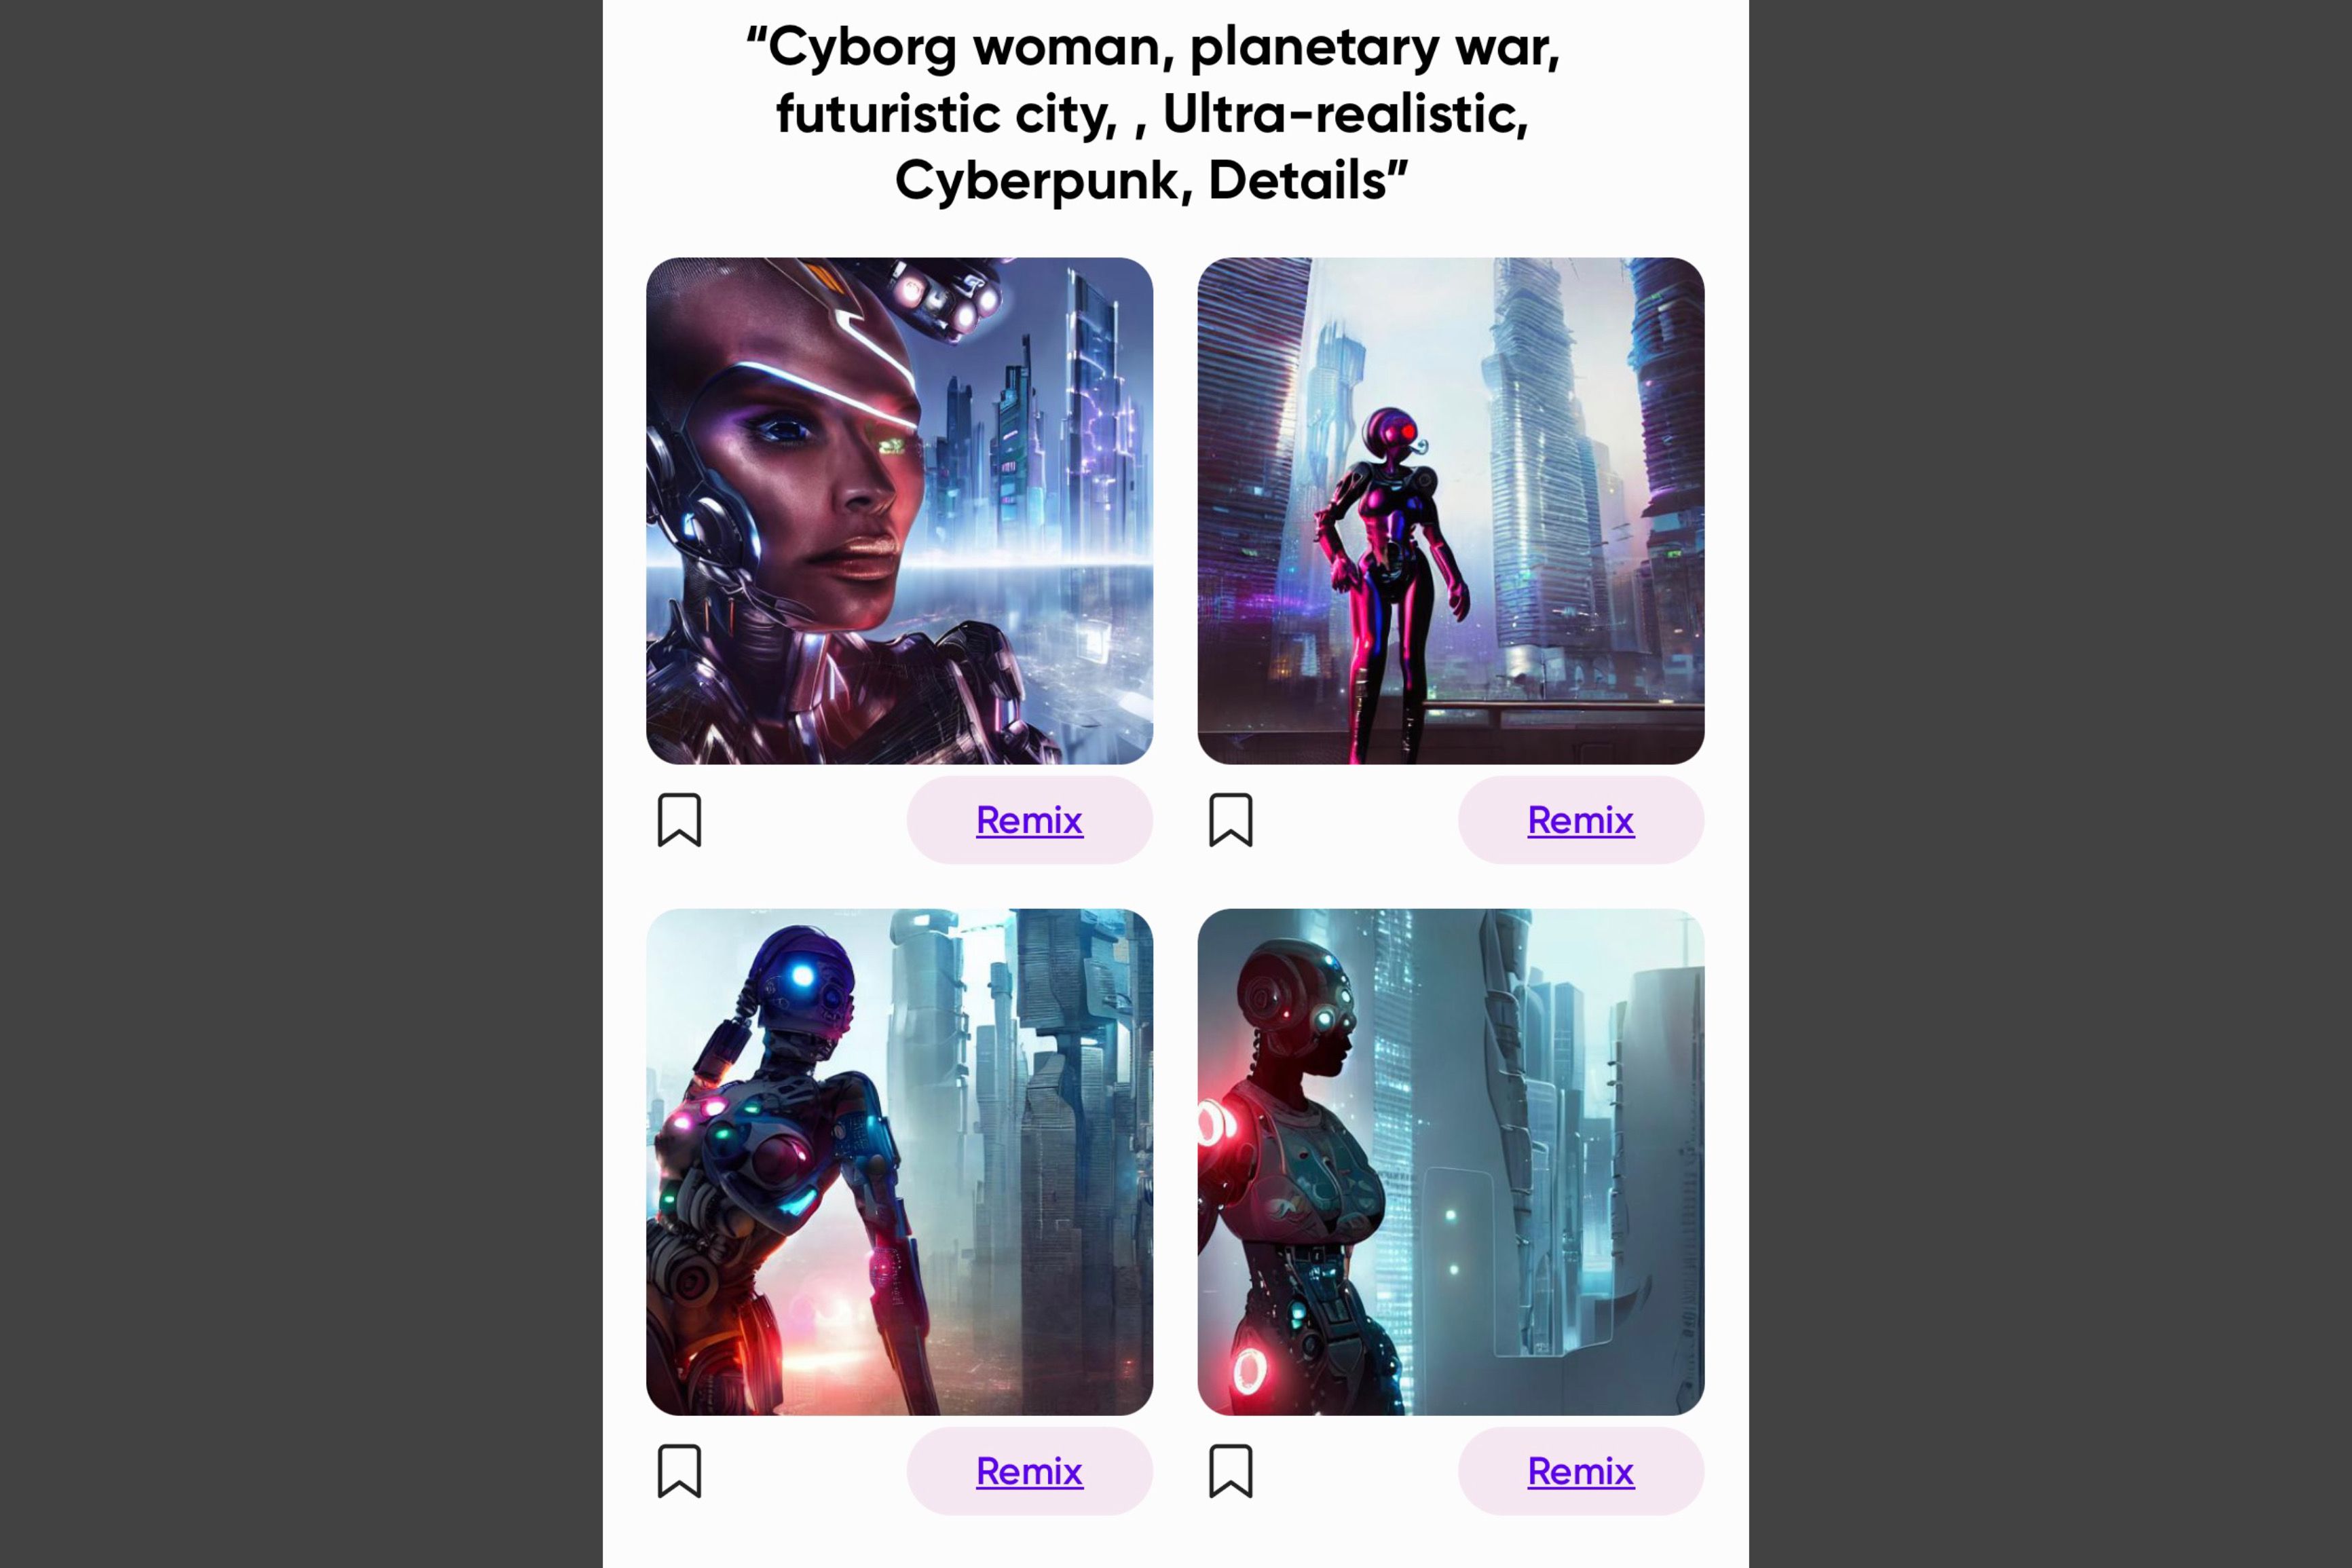 Empat gambar berbeda dari seni buatan AI yang menunjukkan wanita cyborg di kota futuristik